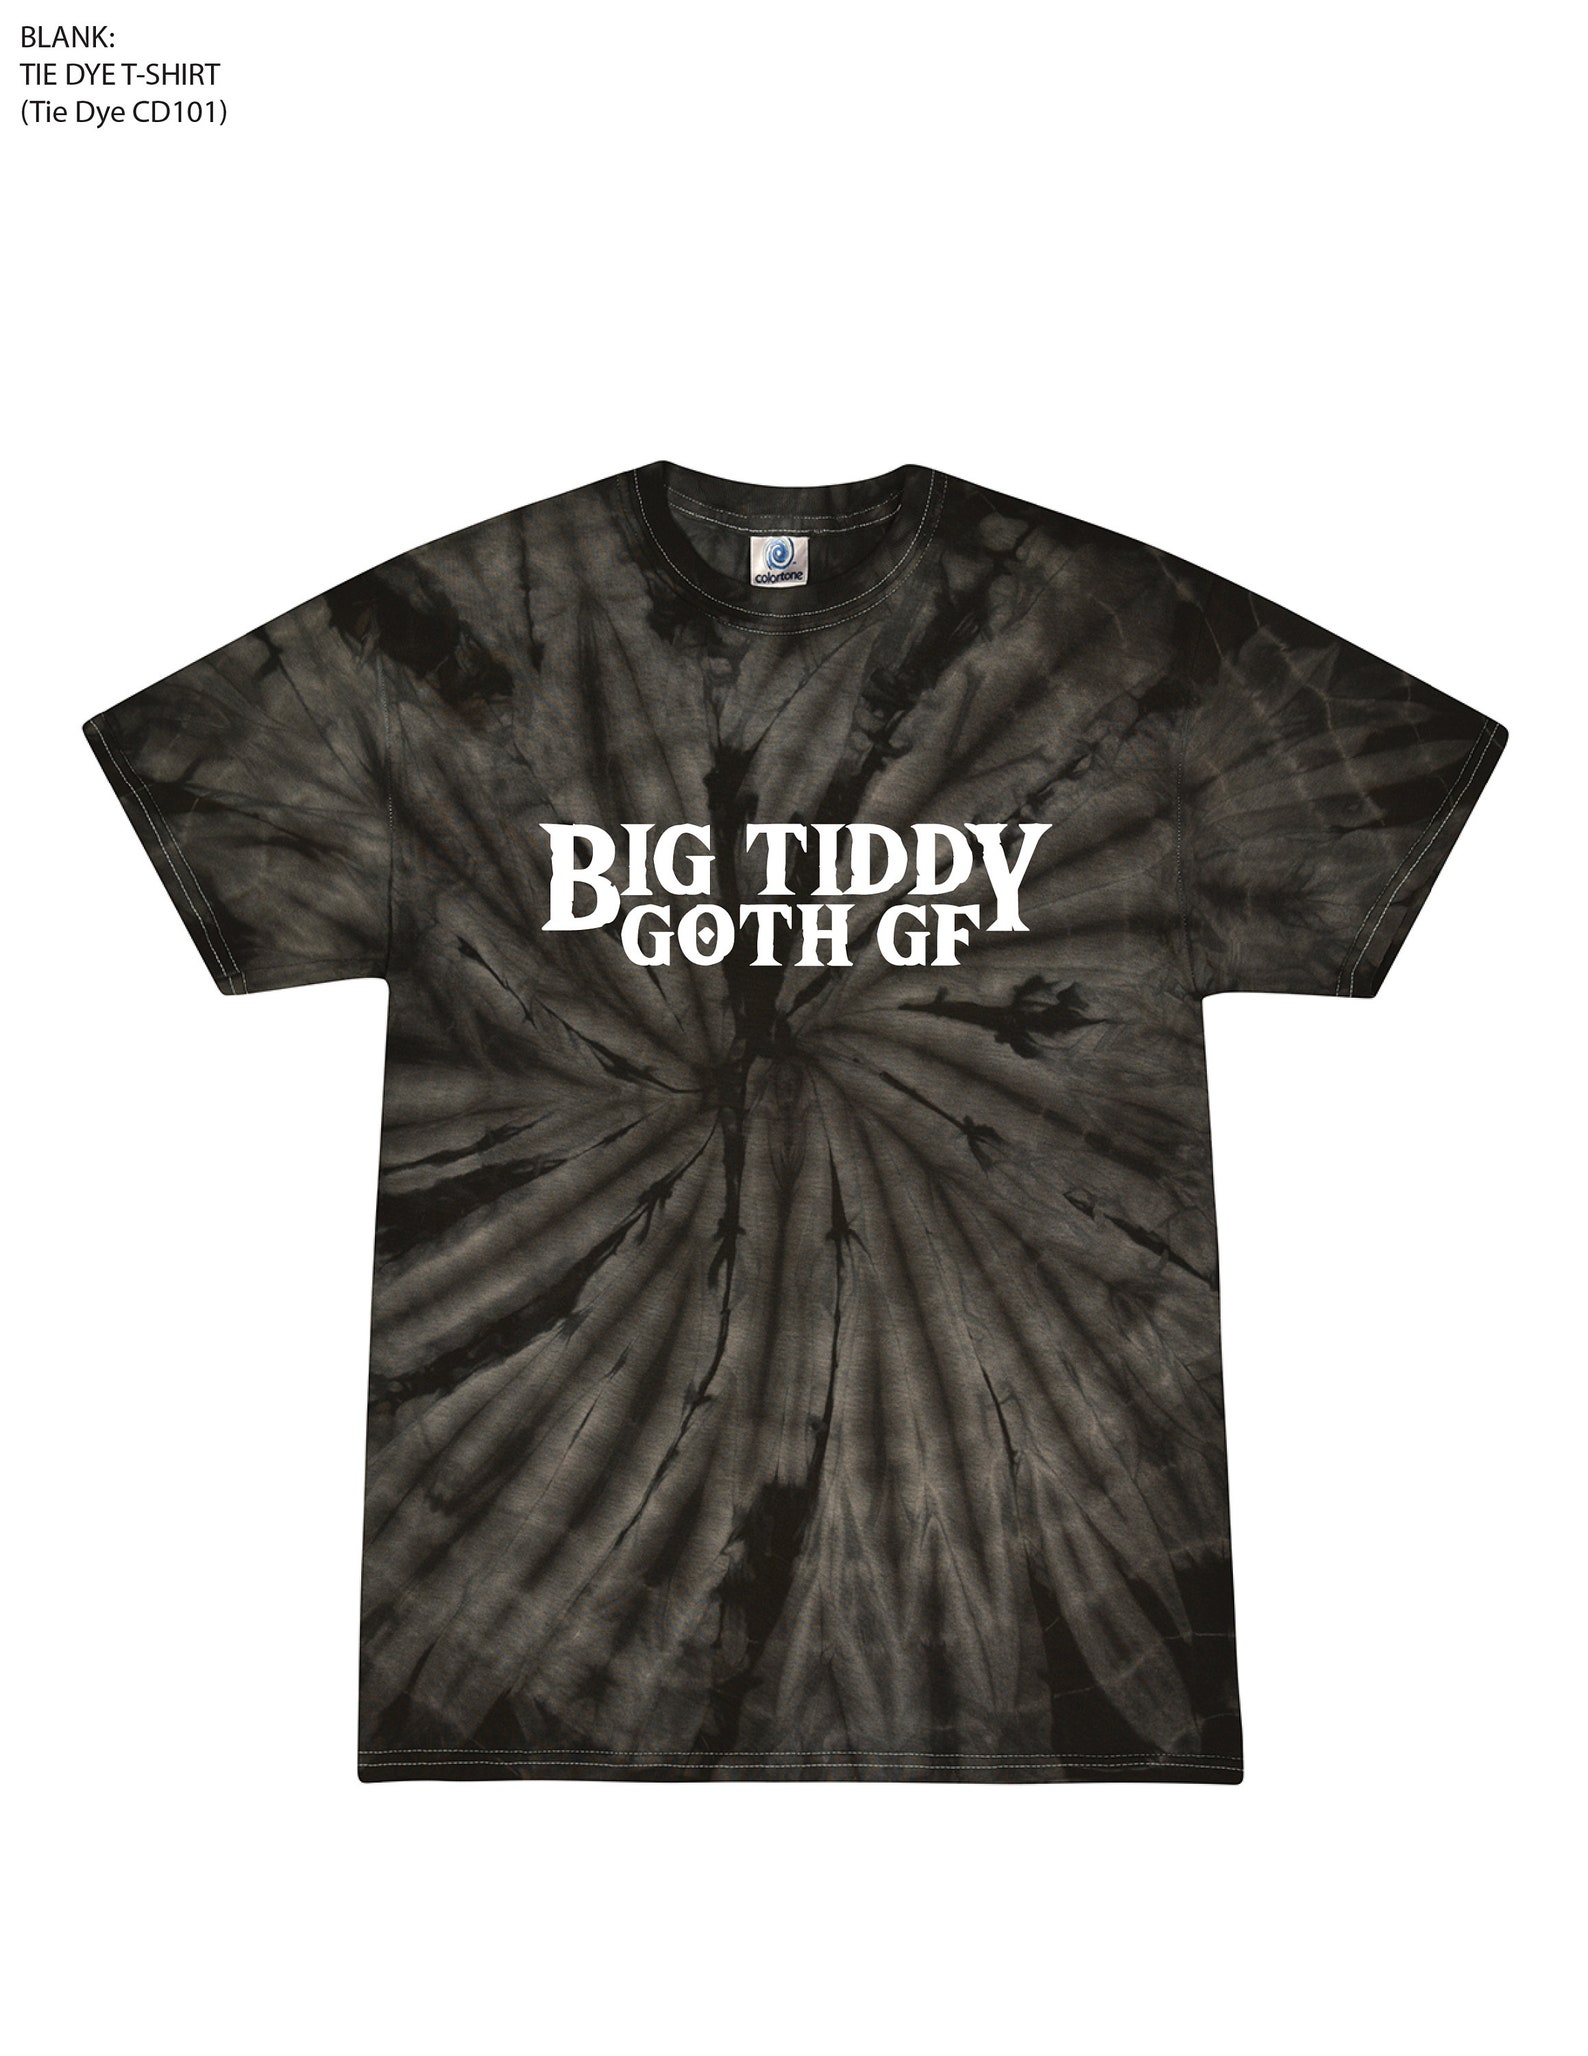 Big Tiddy Goth Girlfriend Tie Dye T Shirt Gothic Titty Gf Etsy